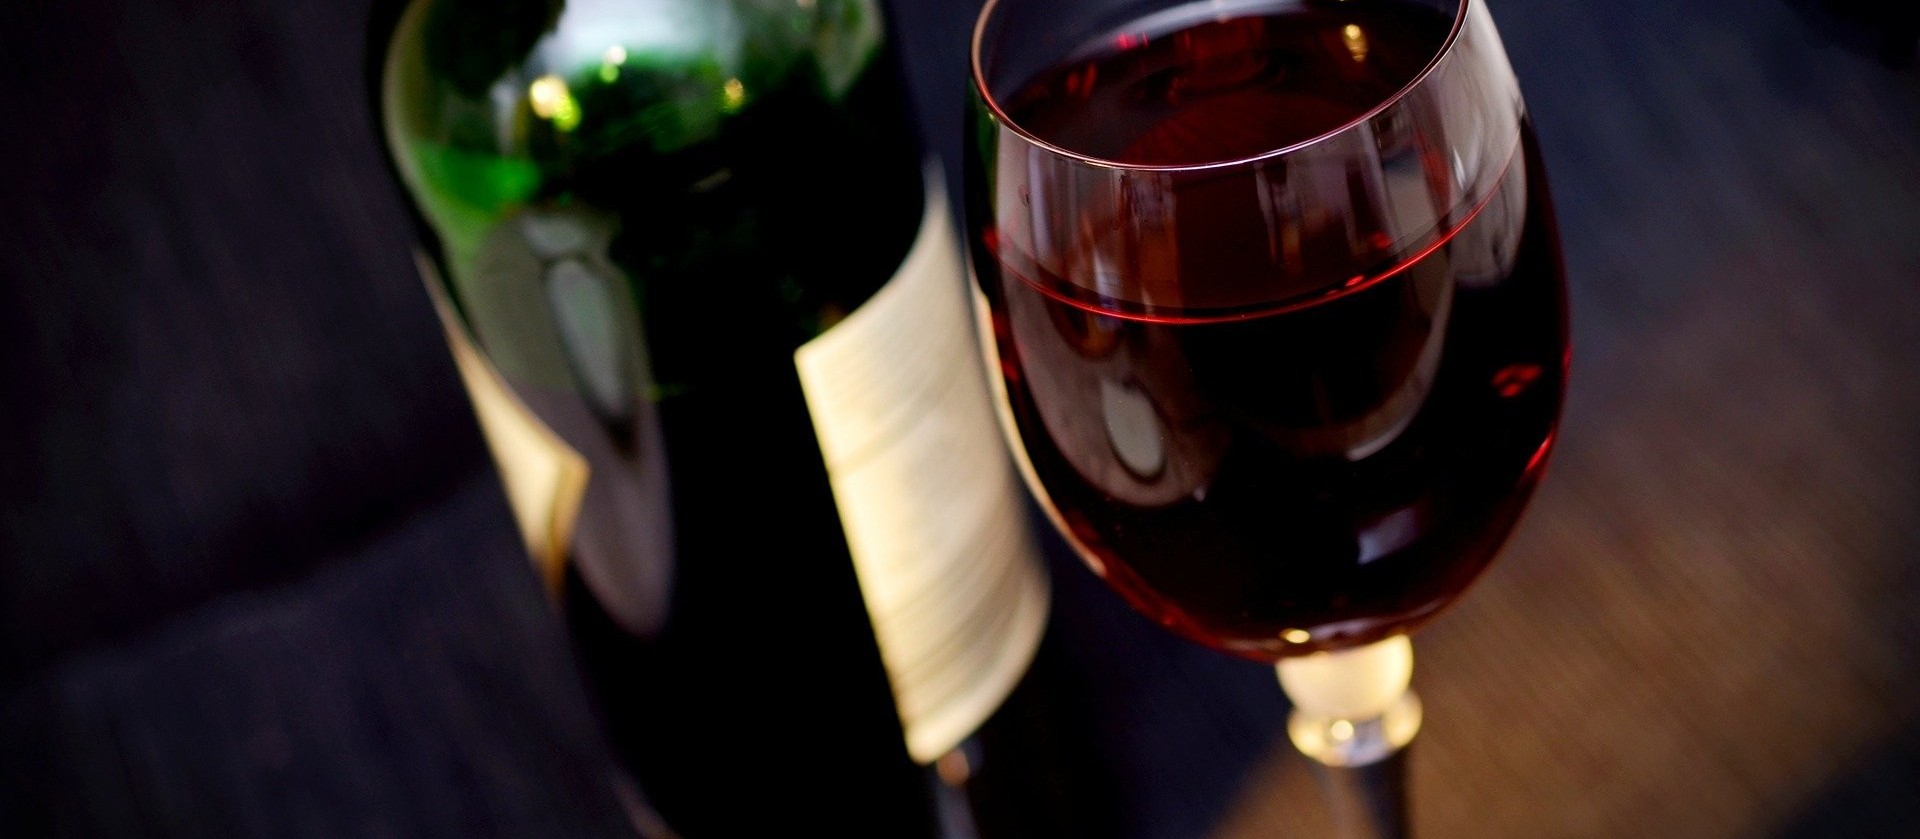 Sobre o teor de álcool no vinho